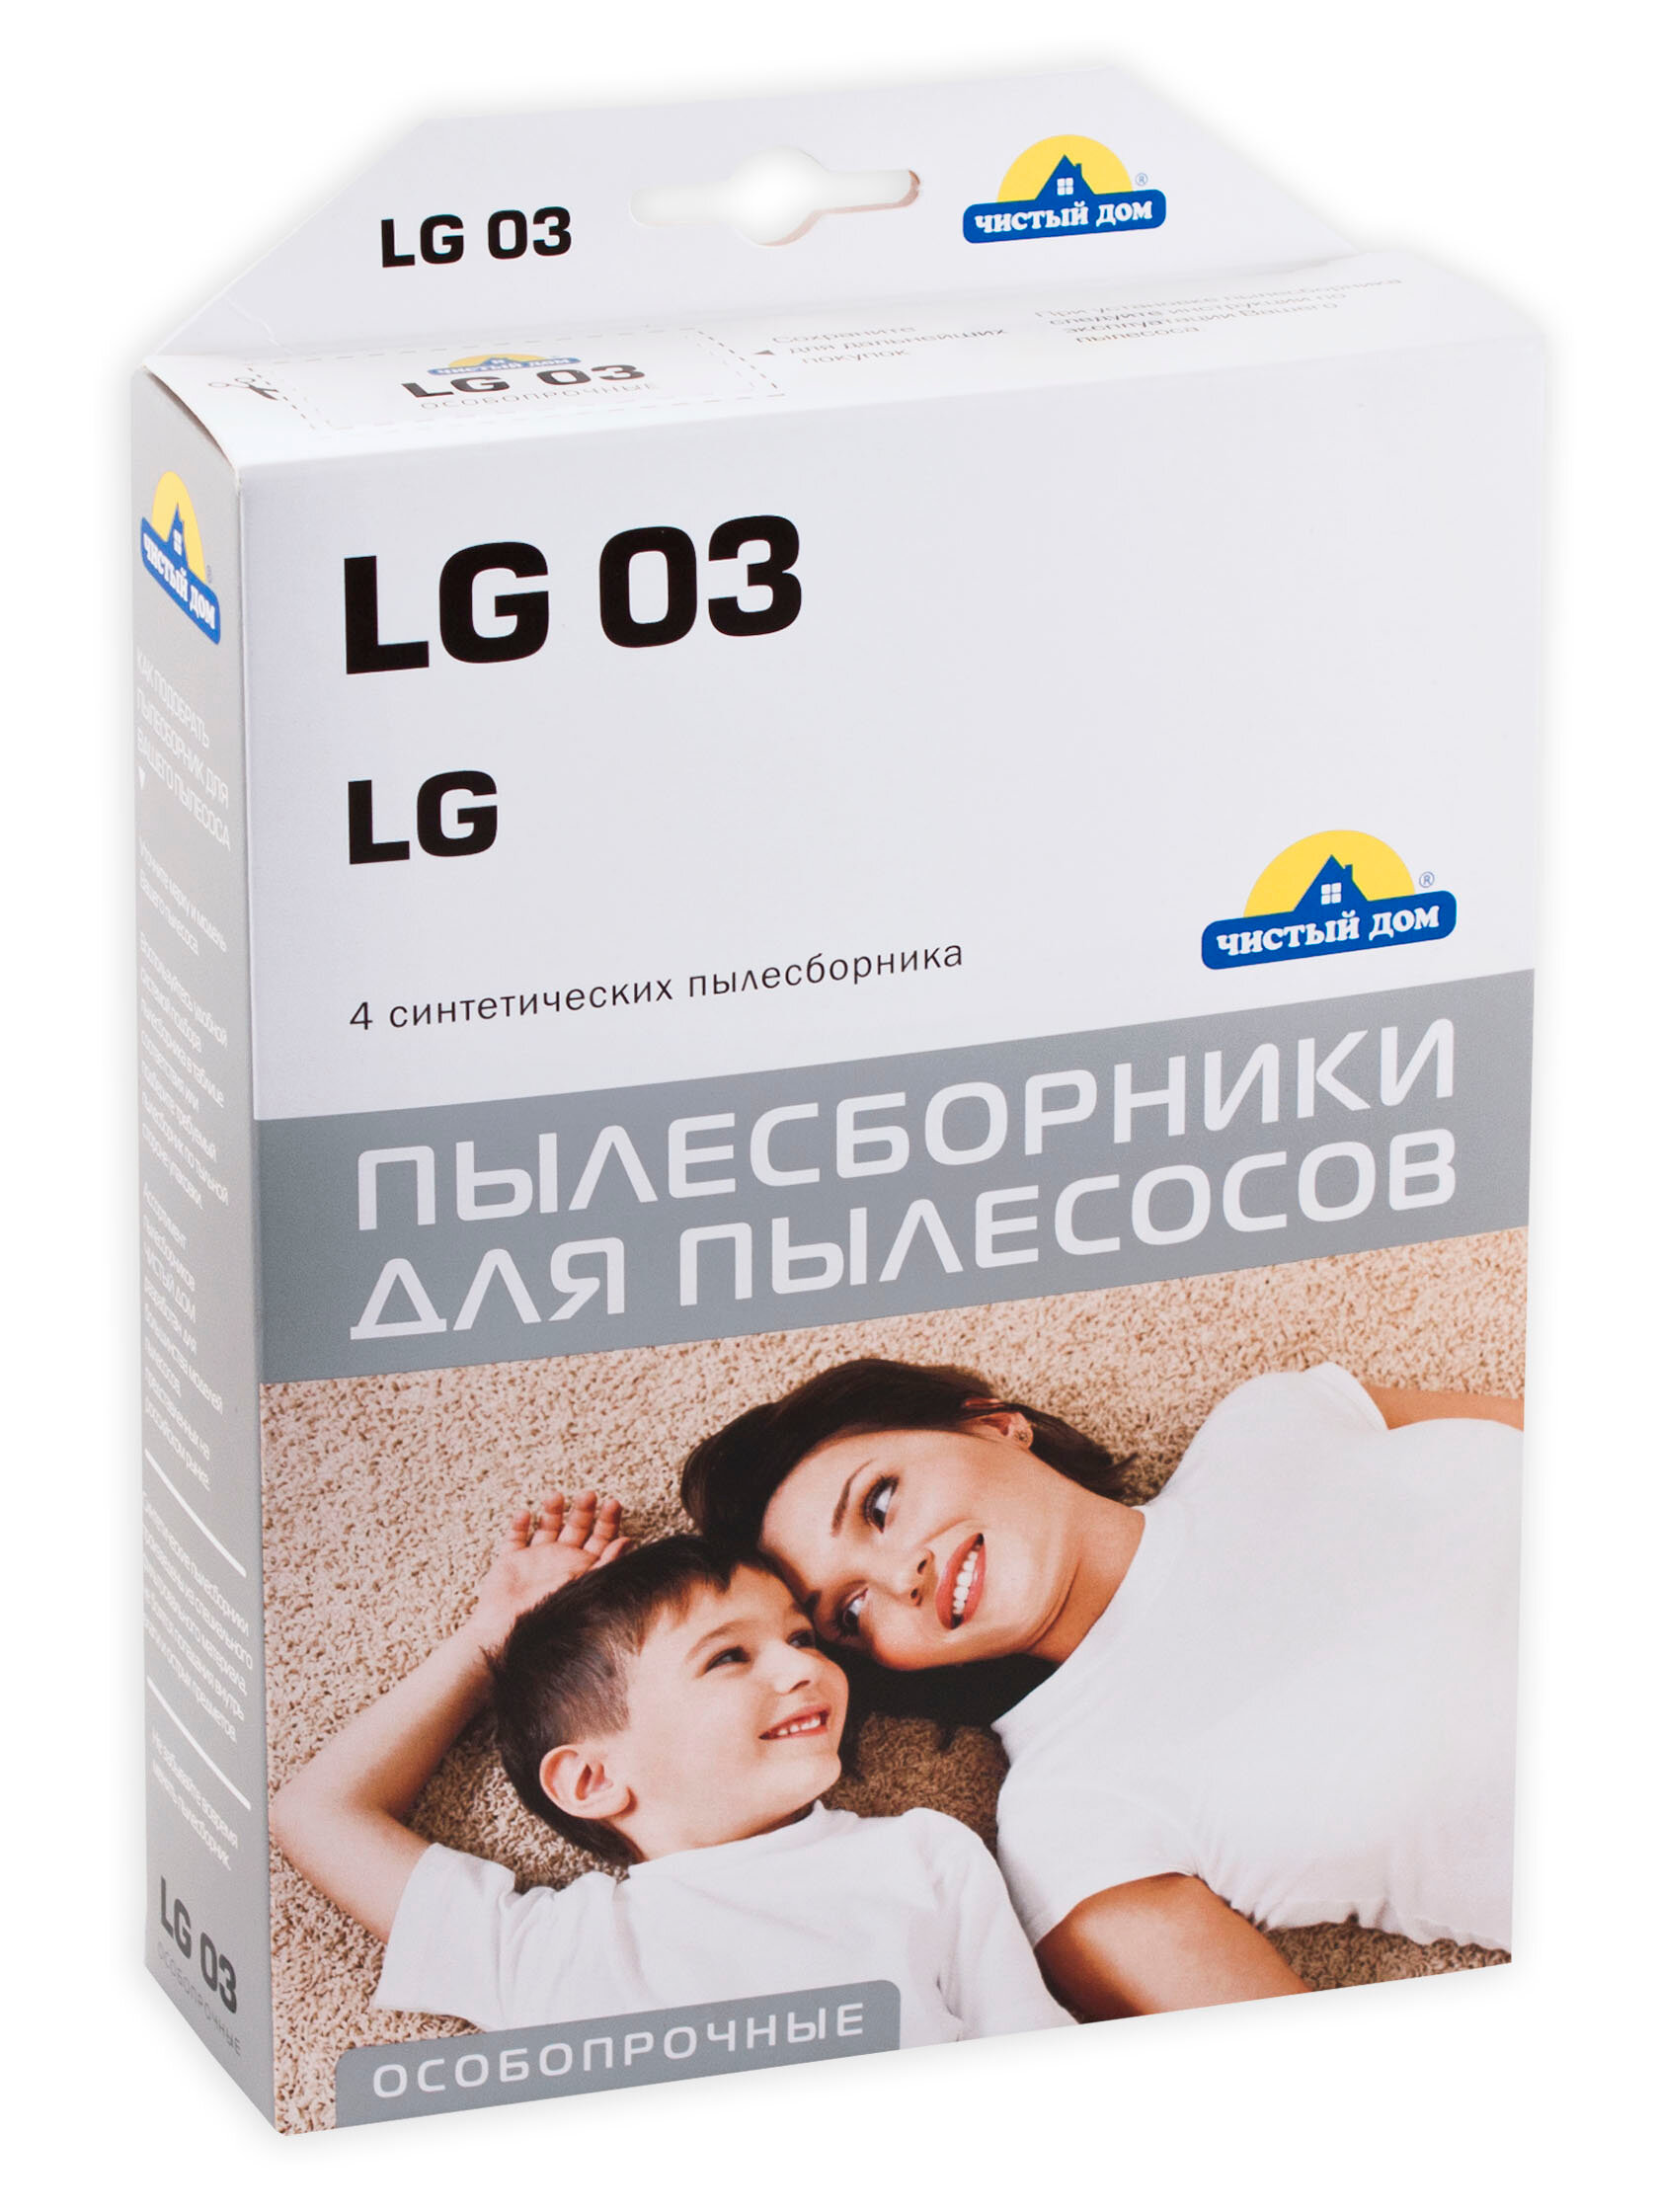 Мешки-пылесборники для пылесосов LG, синтетические, особопрочные Чистый Дом LG 03, 4 штуки